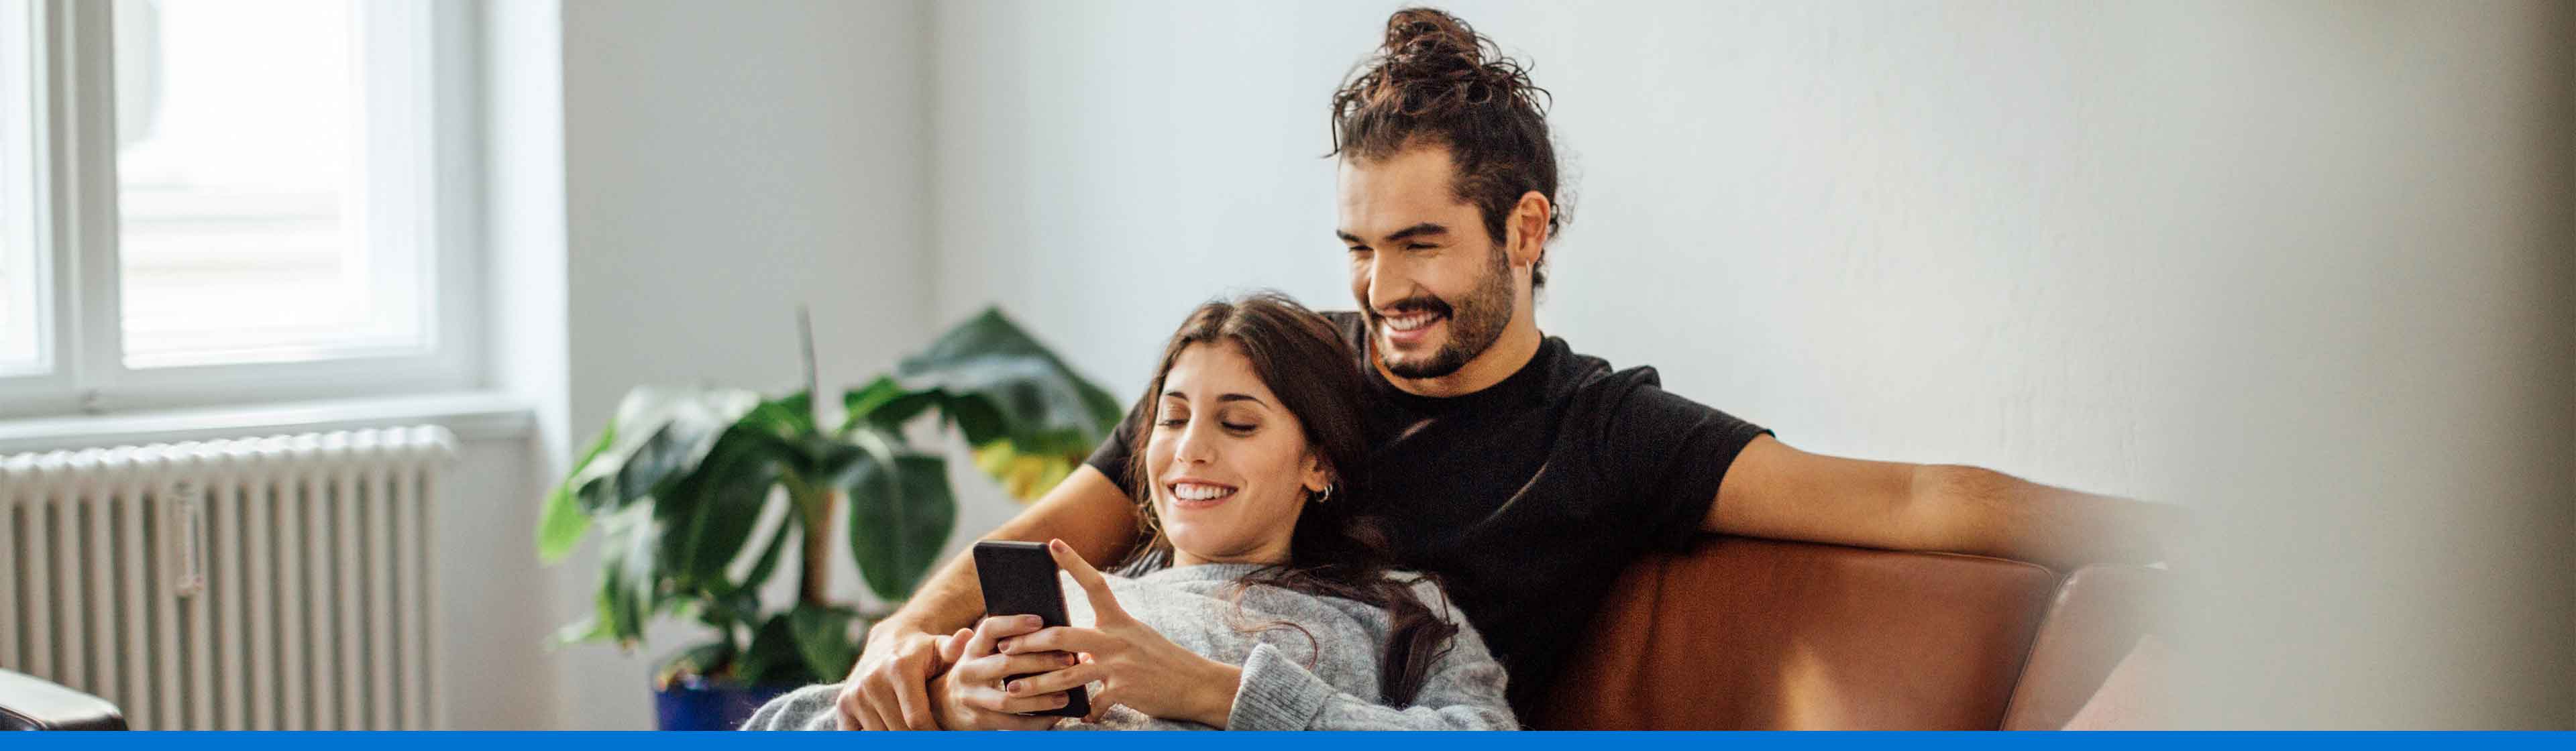 pareja feliz mirando su celular